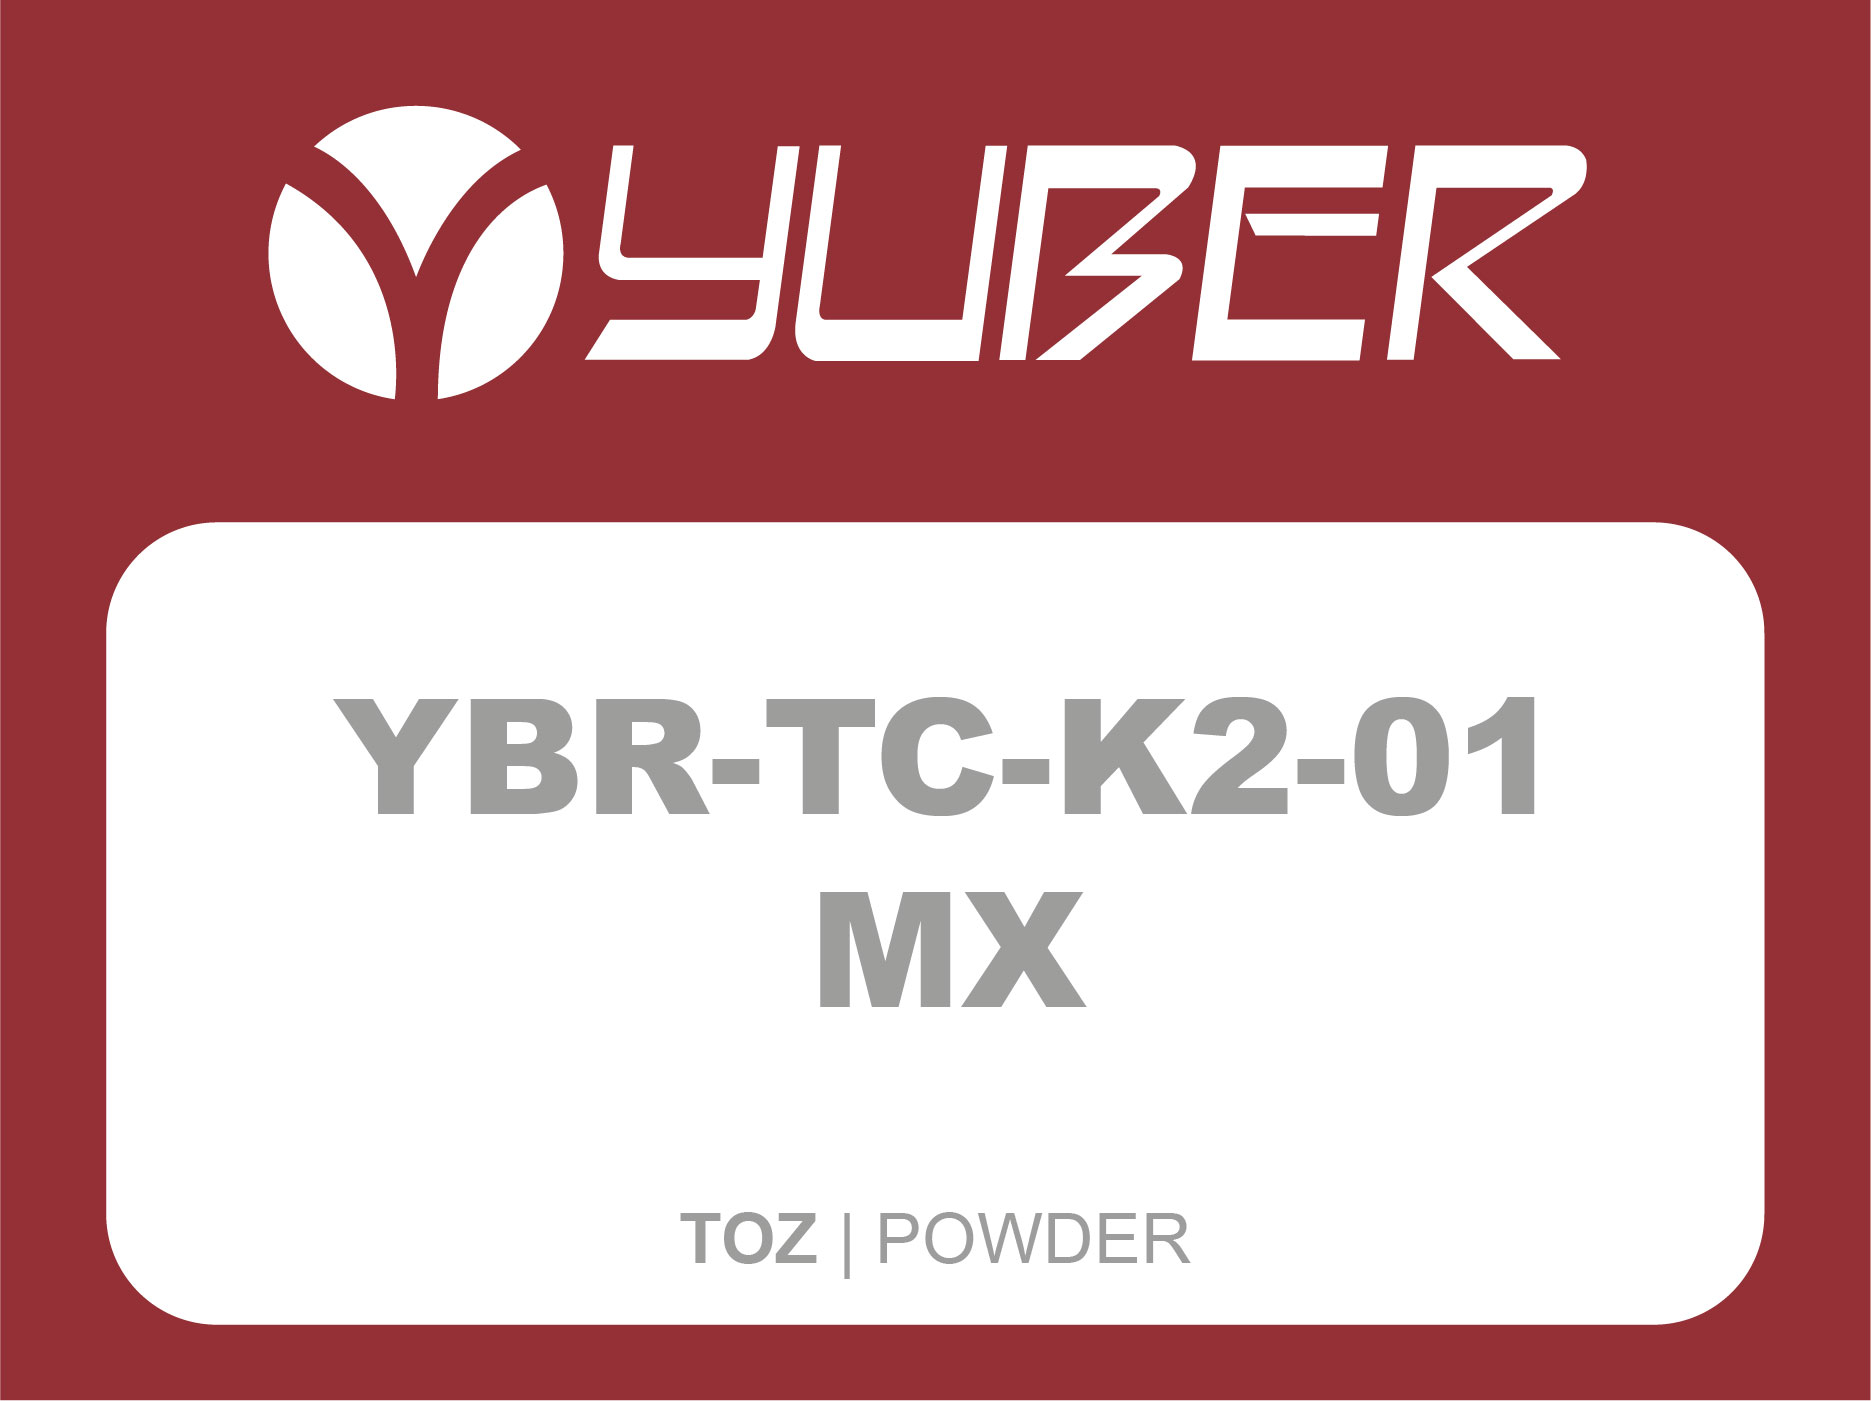 YBR TC k2 01 MX Powder Yuber Metallurgy